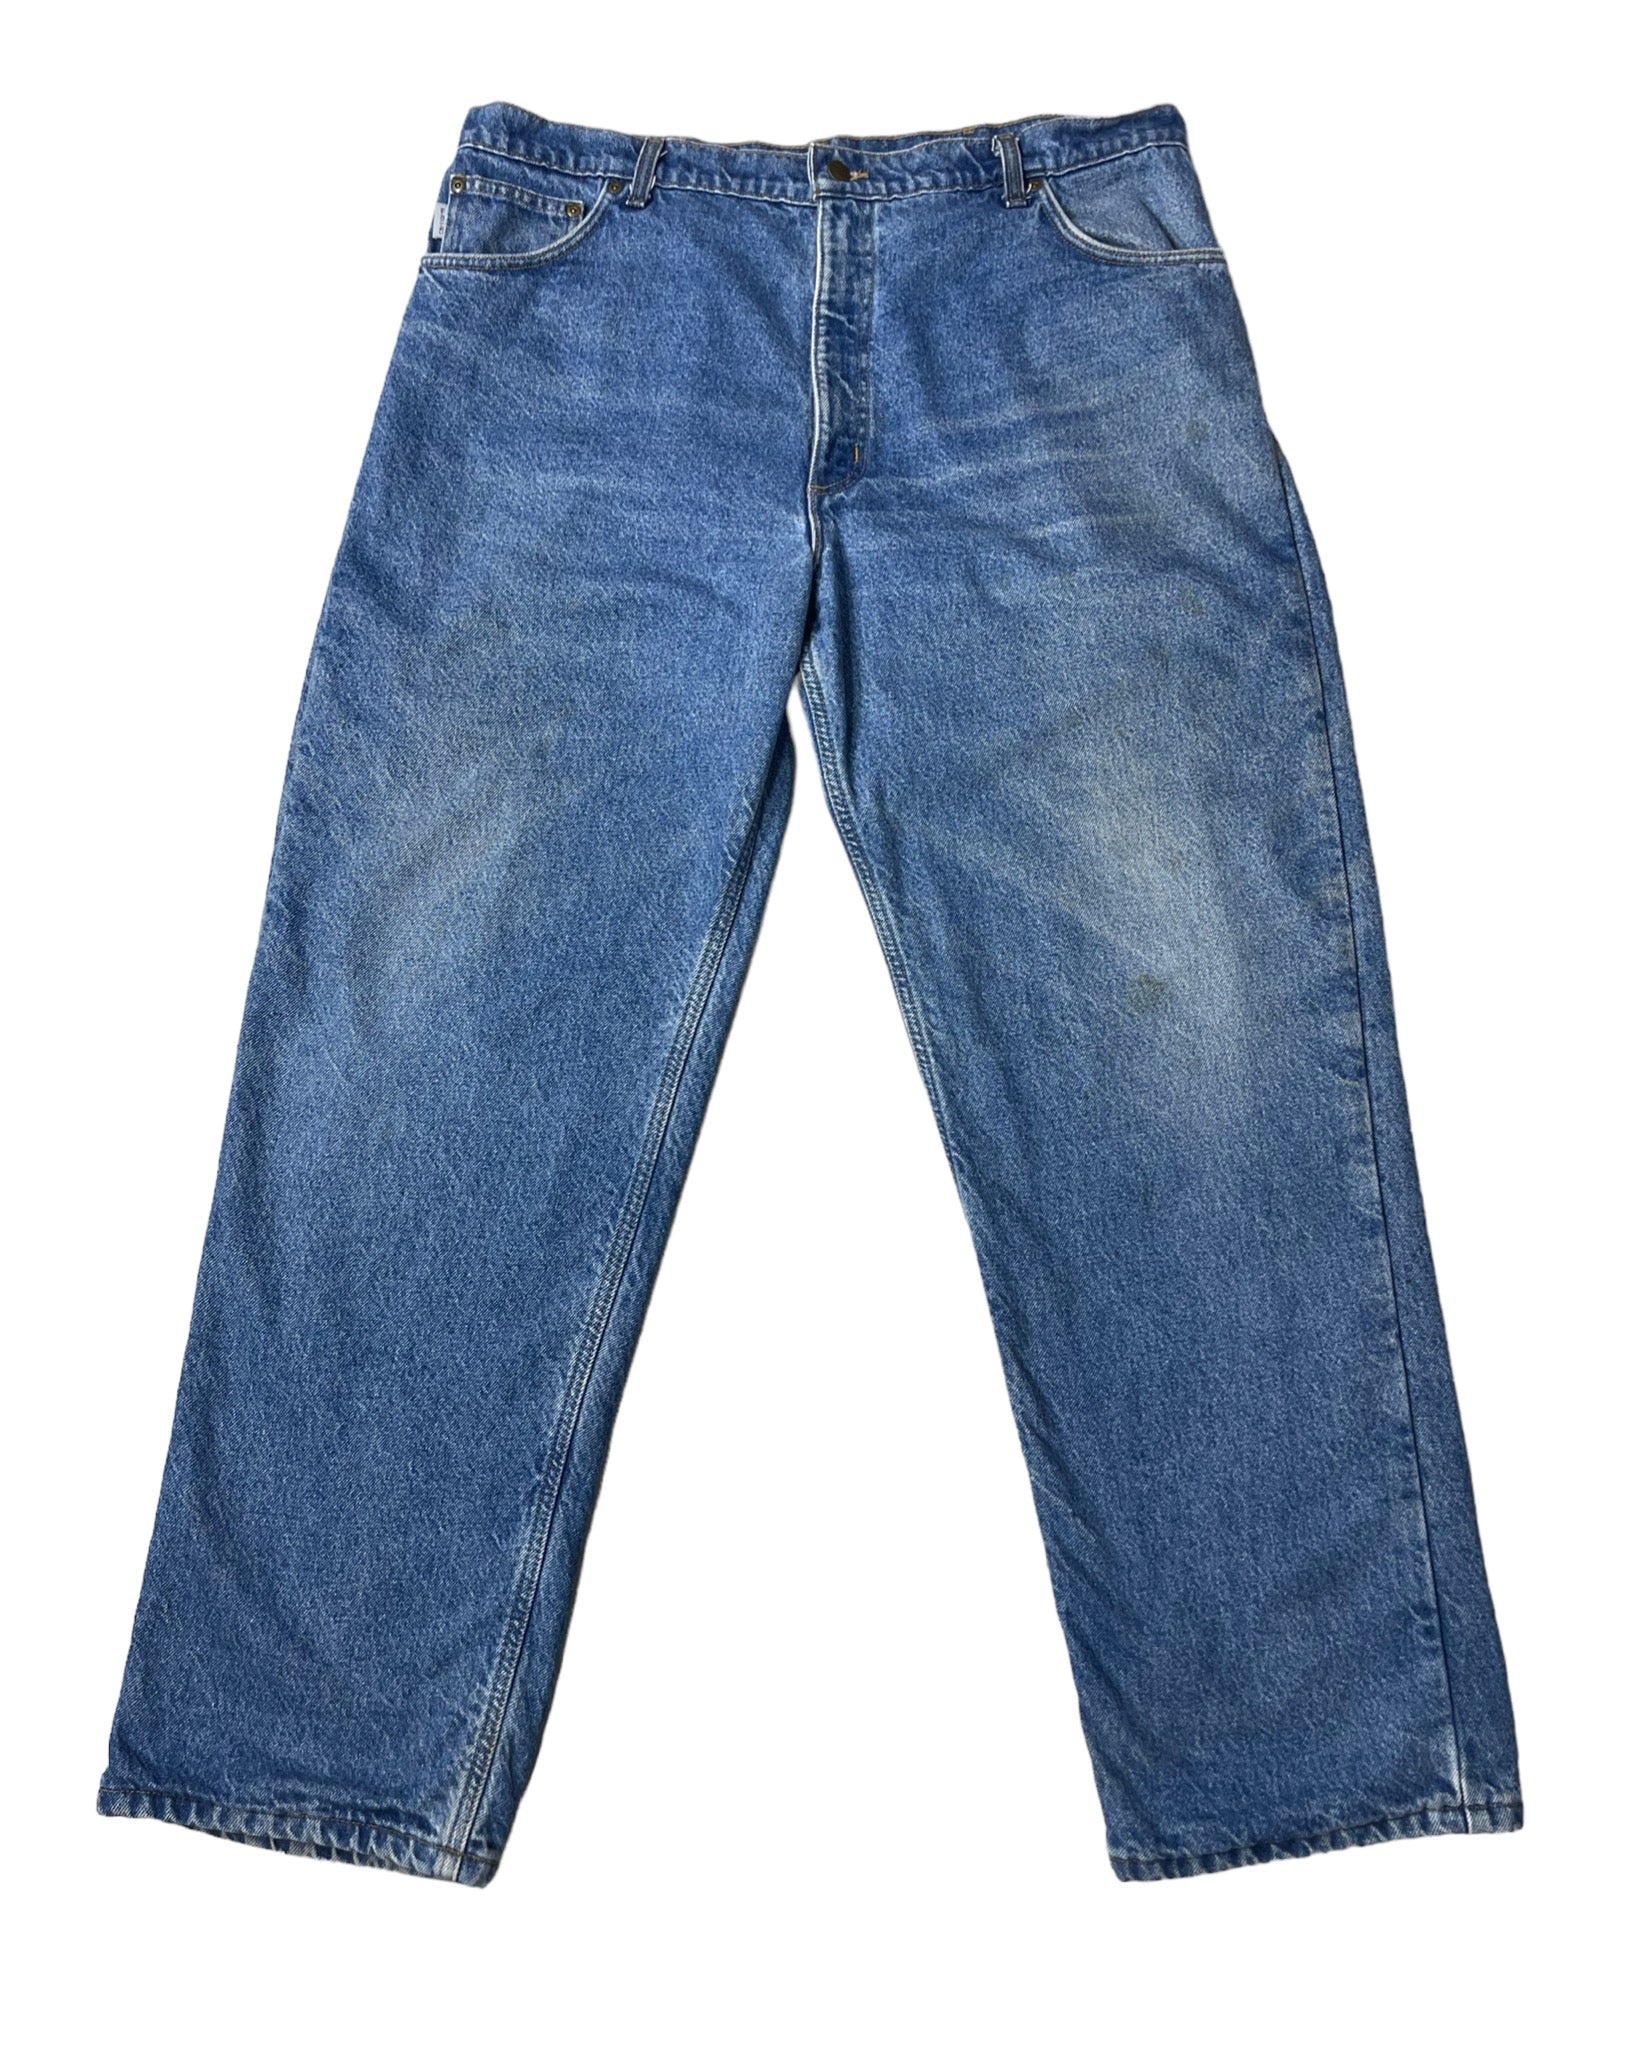  Jeans Carhartt Jean - B21DST - W42 L32 - PLOMOSTORE